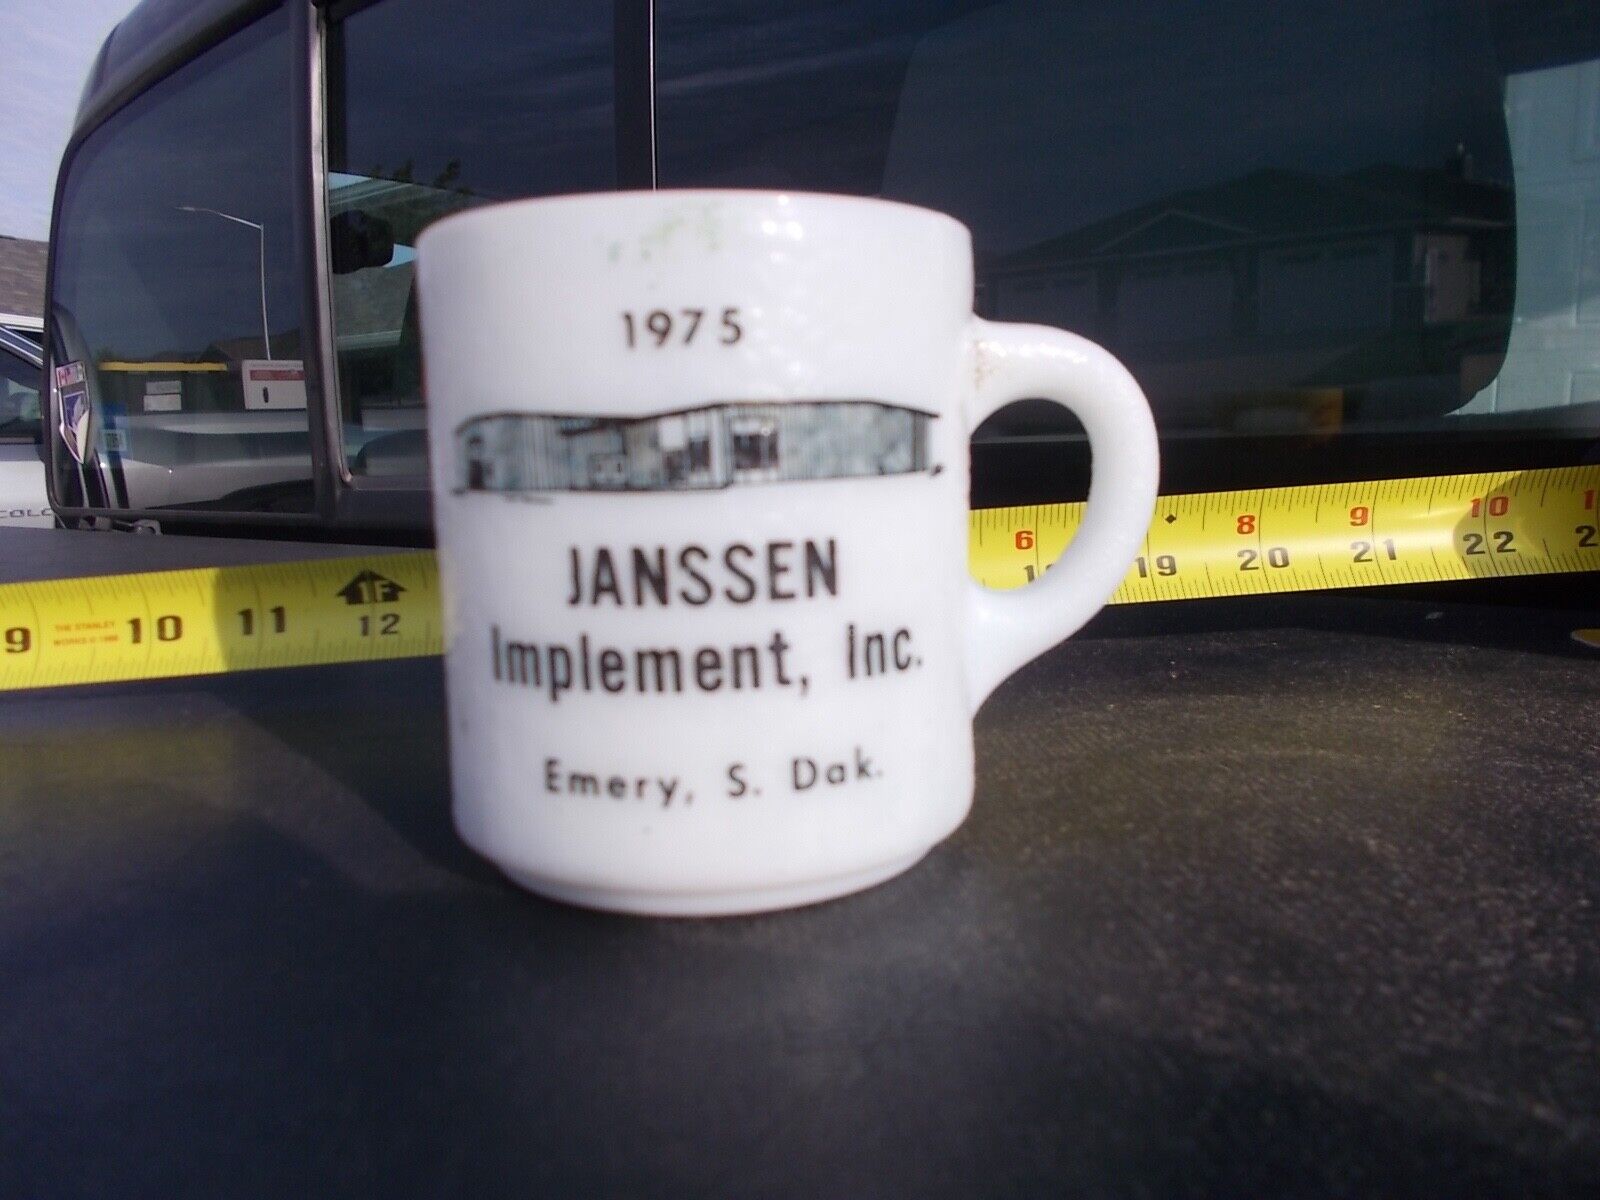 Emery South Dakota Janssen Implement John Deere ? Tractor Dealer Coffee Cup